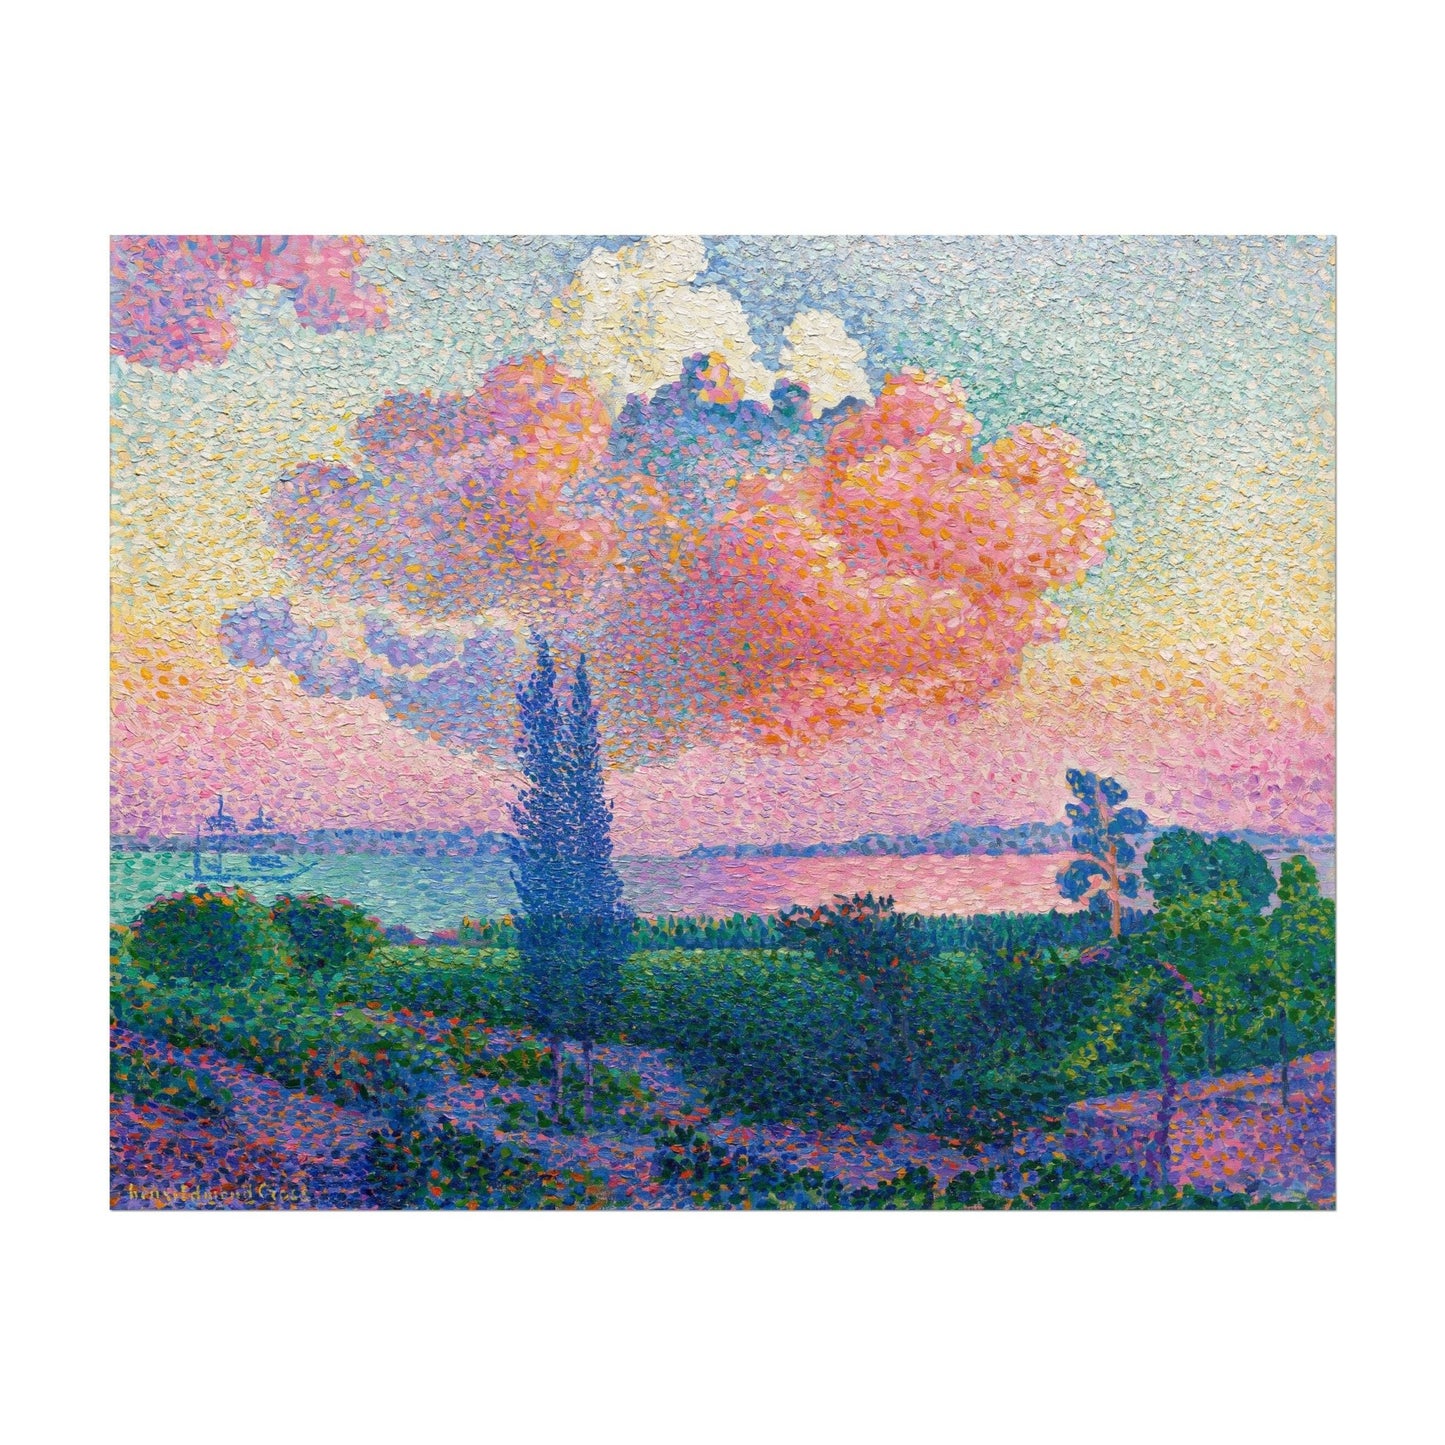 HENRI-EDMOND CROSS - The Pink Cloud